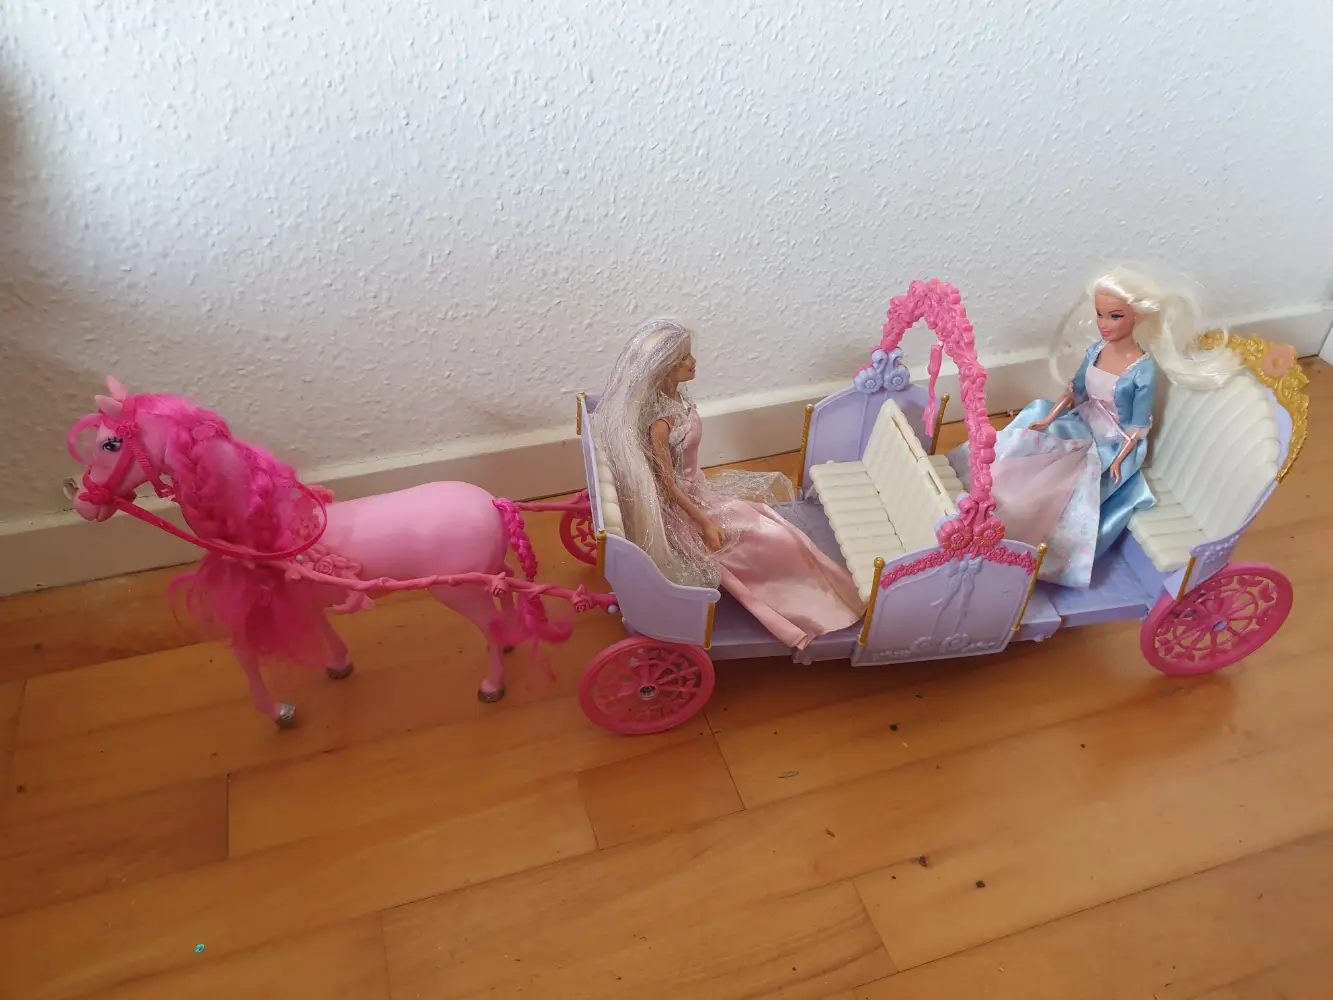 Køb Barbie Heste karet af Janne på Reshopper · Shop secondhand børn, mor og bolig